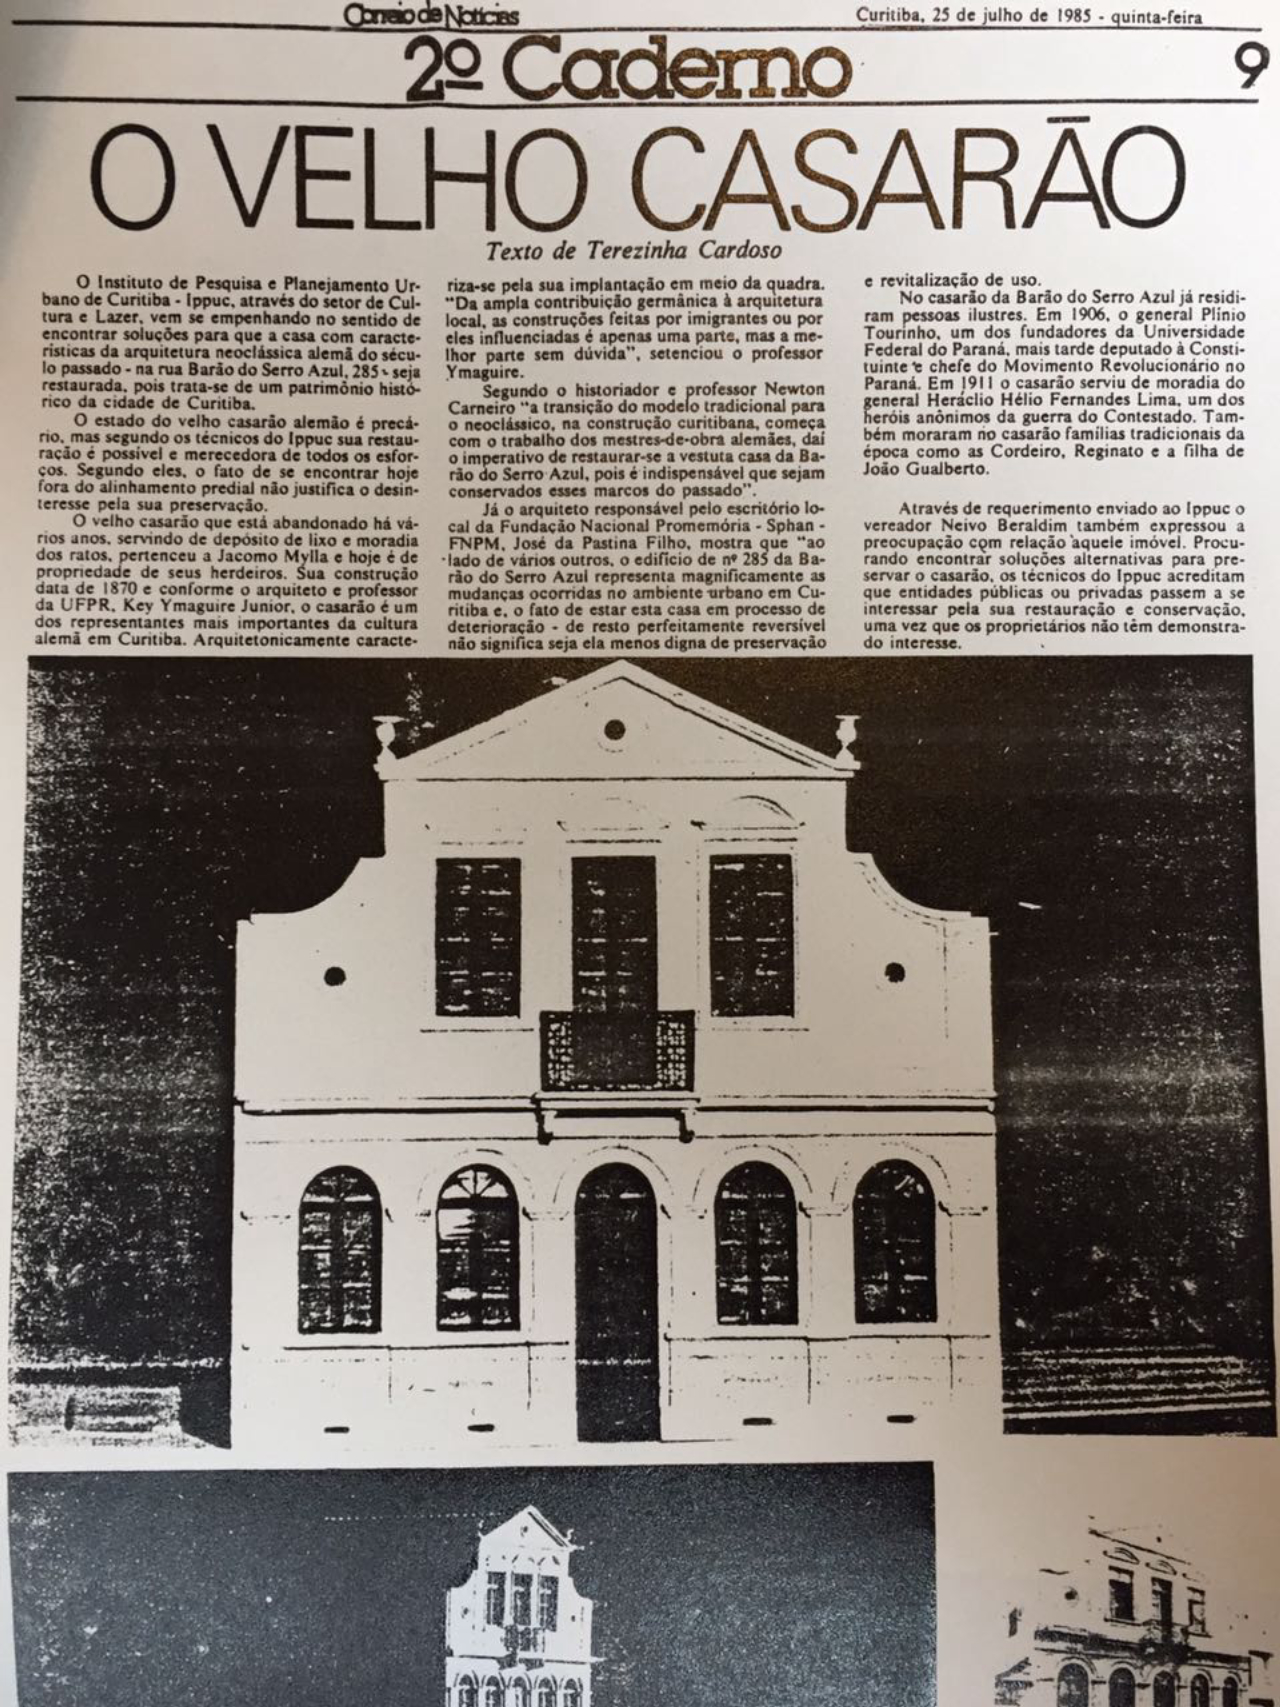 Reprodução do Correio de Notícias, que exibia matéria sobre a Casa Mylla. Foto: Reprodução/Correio de Notícias